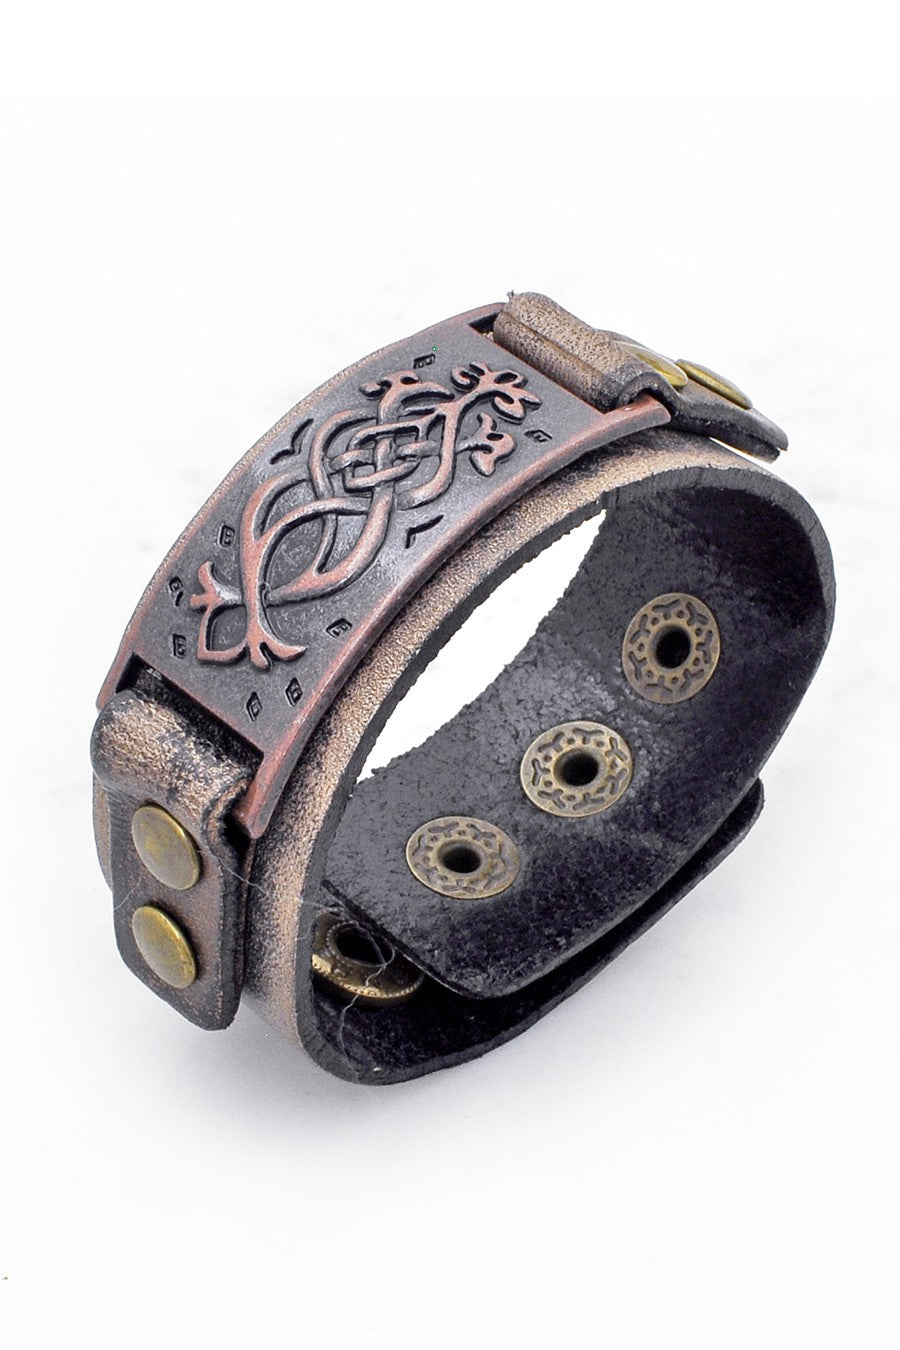 Celtic Leather stamped bracelet